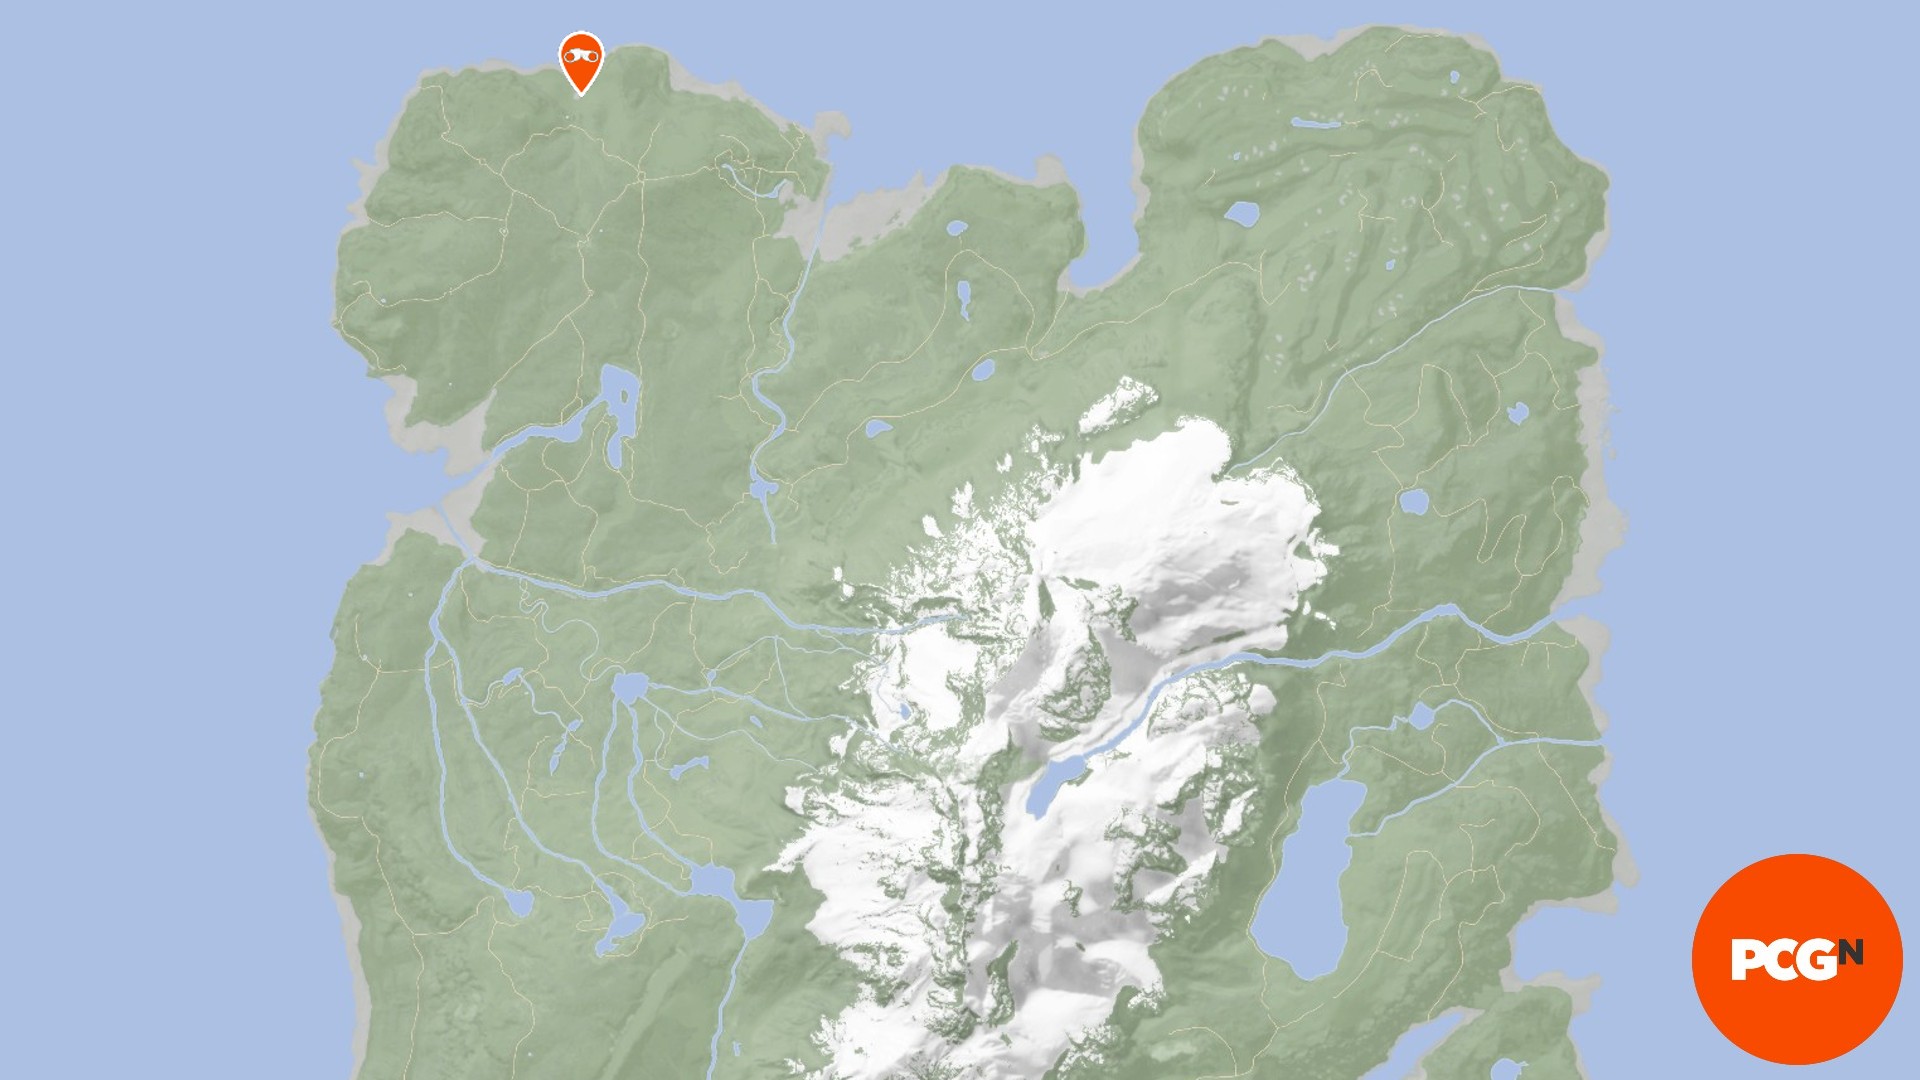 Binoculares de Sons of the Forest: la imagen muestra la ubicación de los binoculares en la esquina superior derecha del mapa.